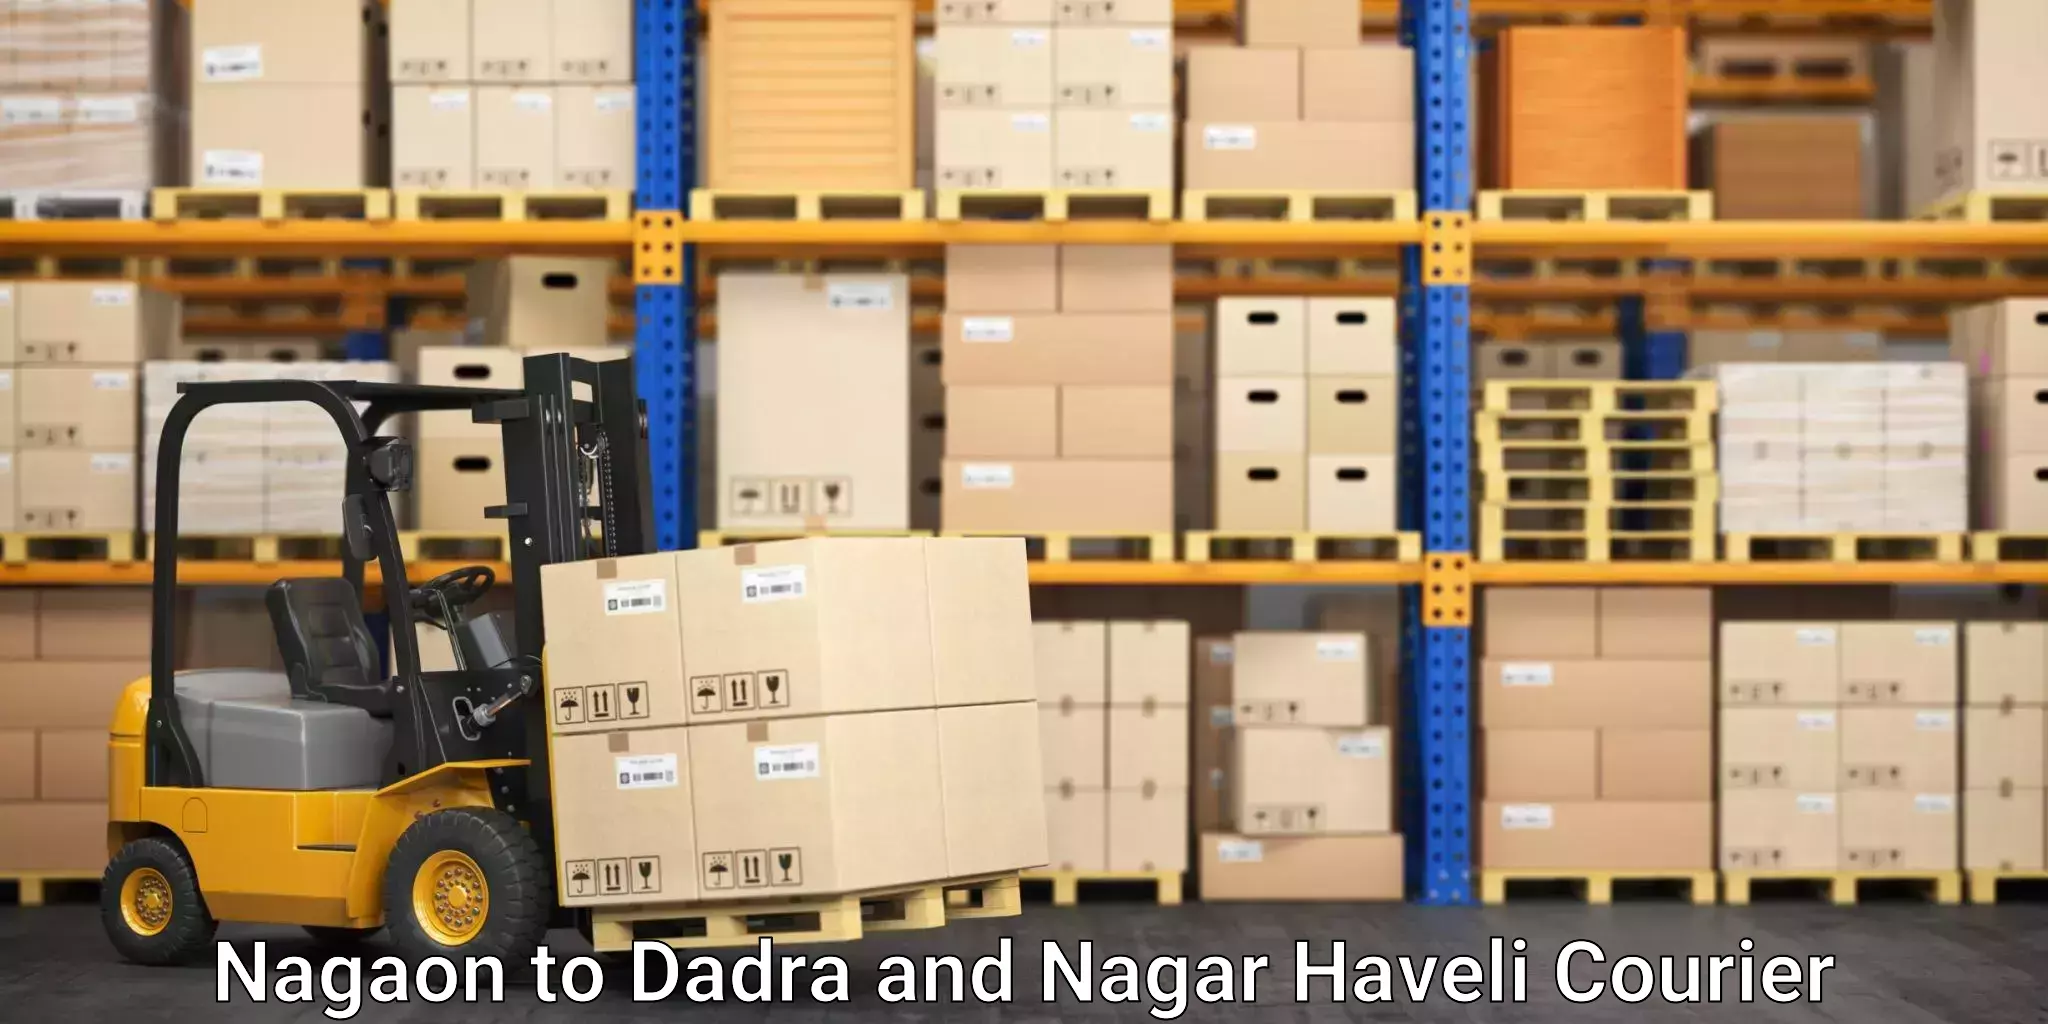 On-demand courier Nagaon to Dadra and Nagar Haveli